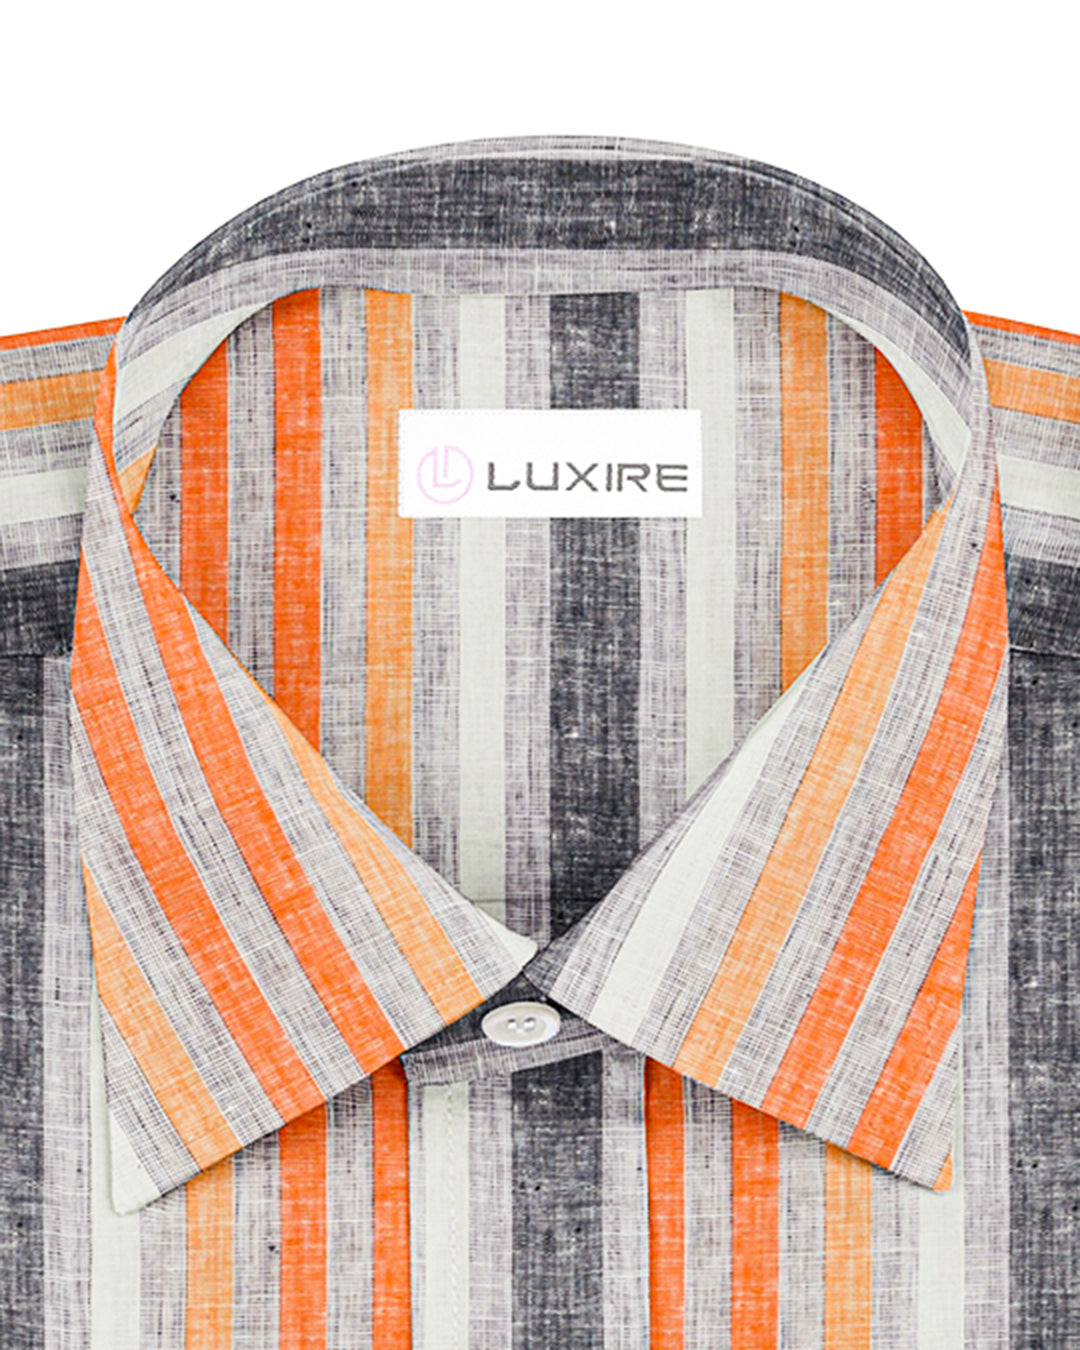 Collar of custom linen shirt for men in orange red white stripes